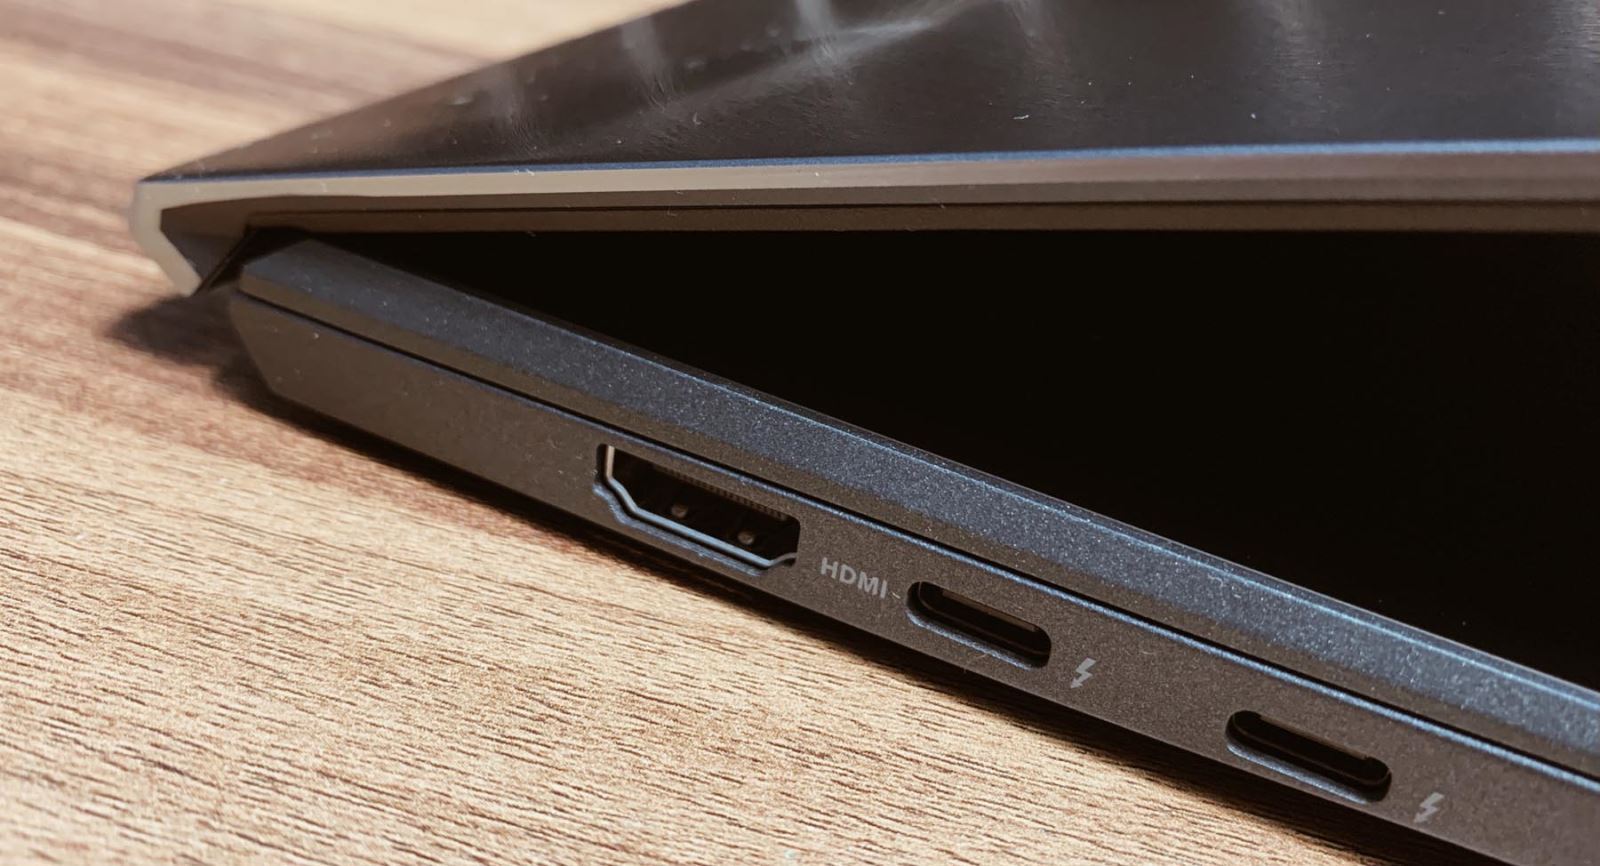 ZenBook Duo UX482